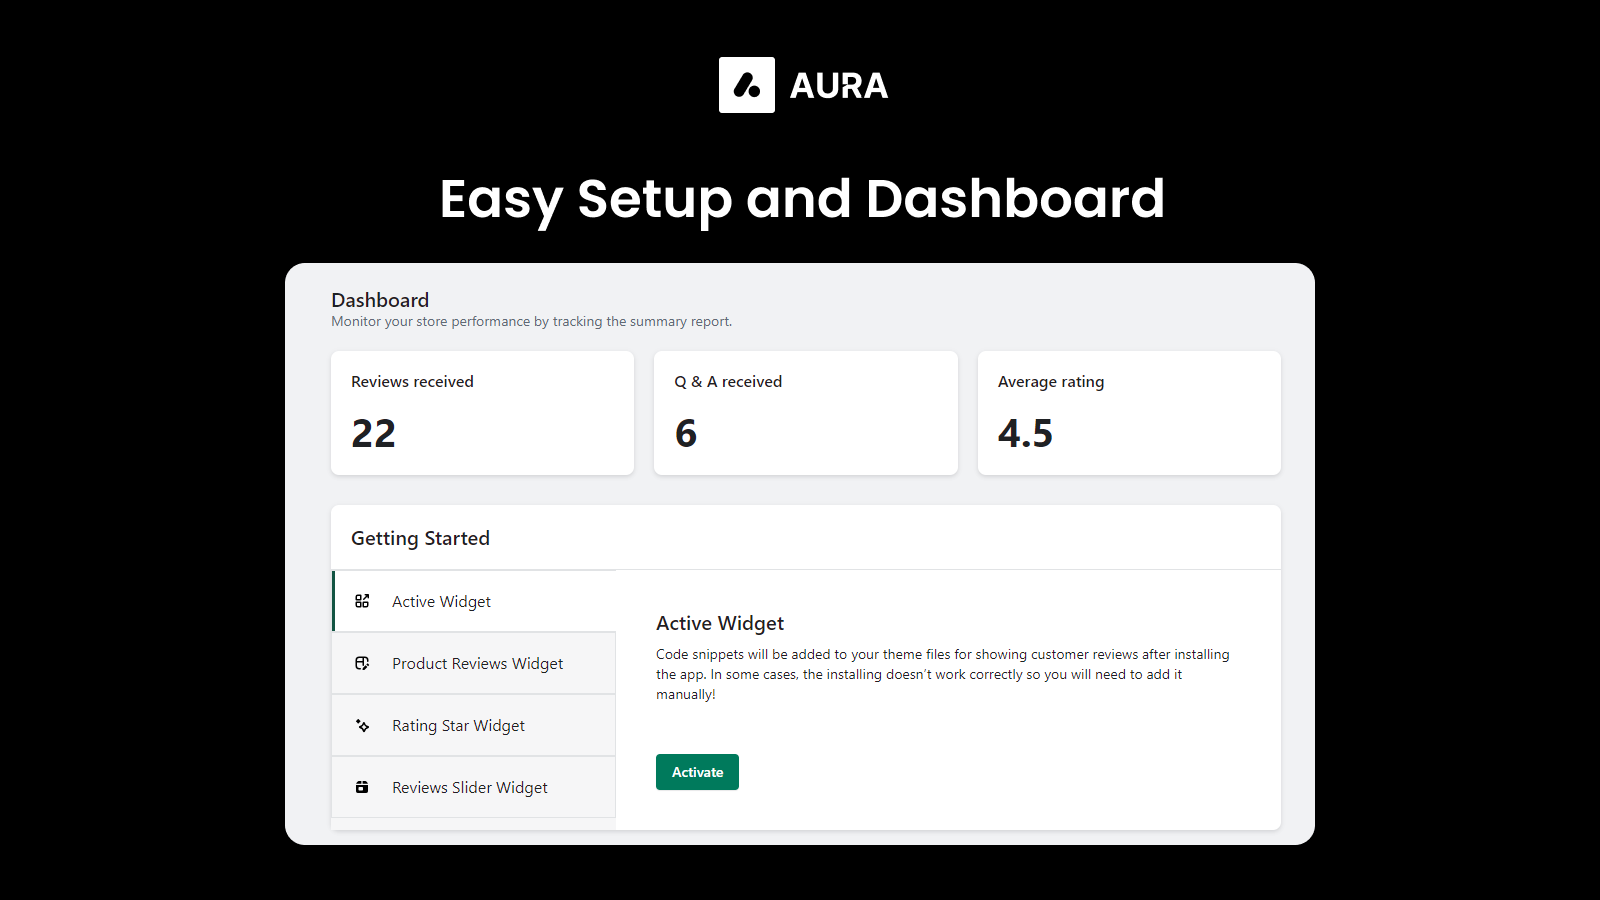 Easy setup and dashboard - Aura